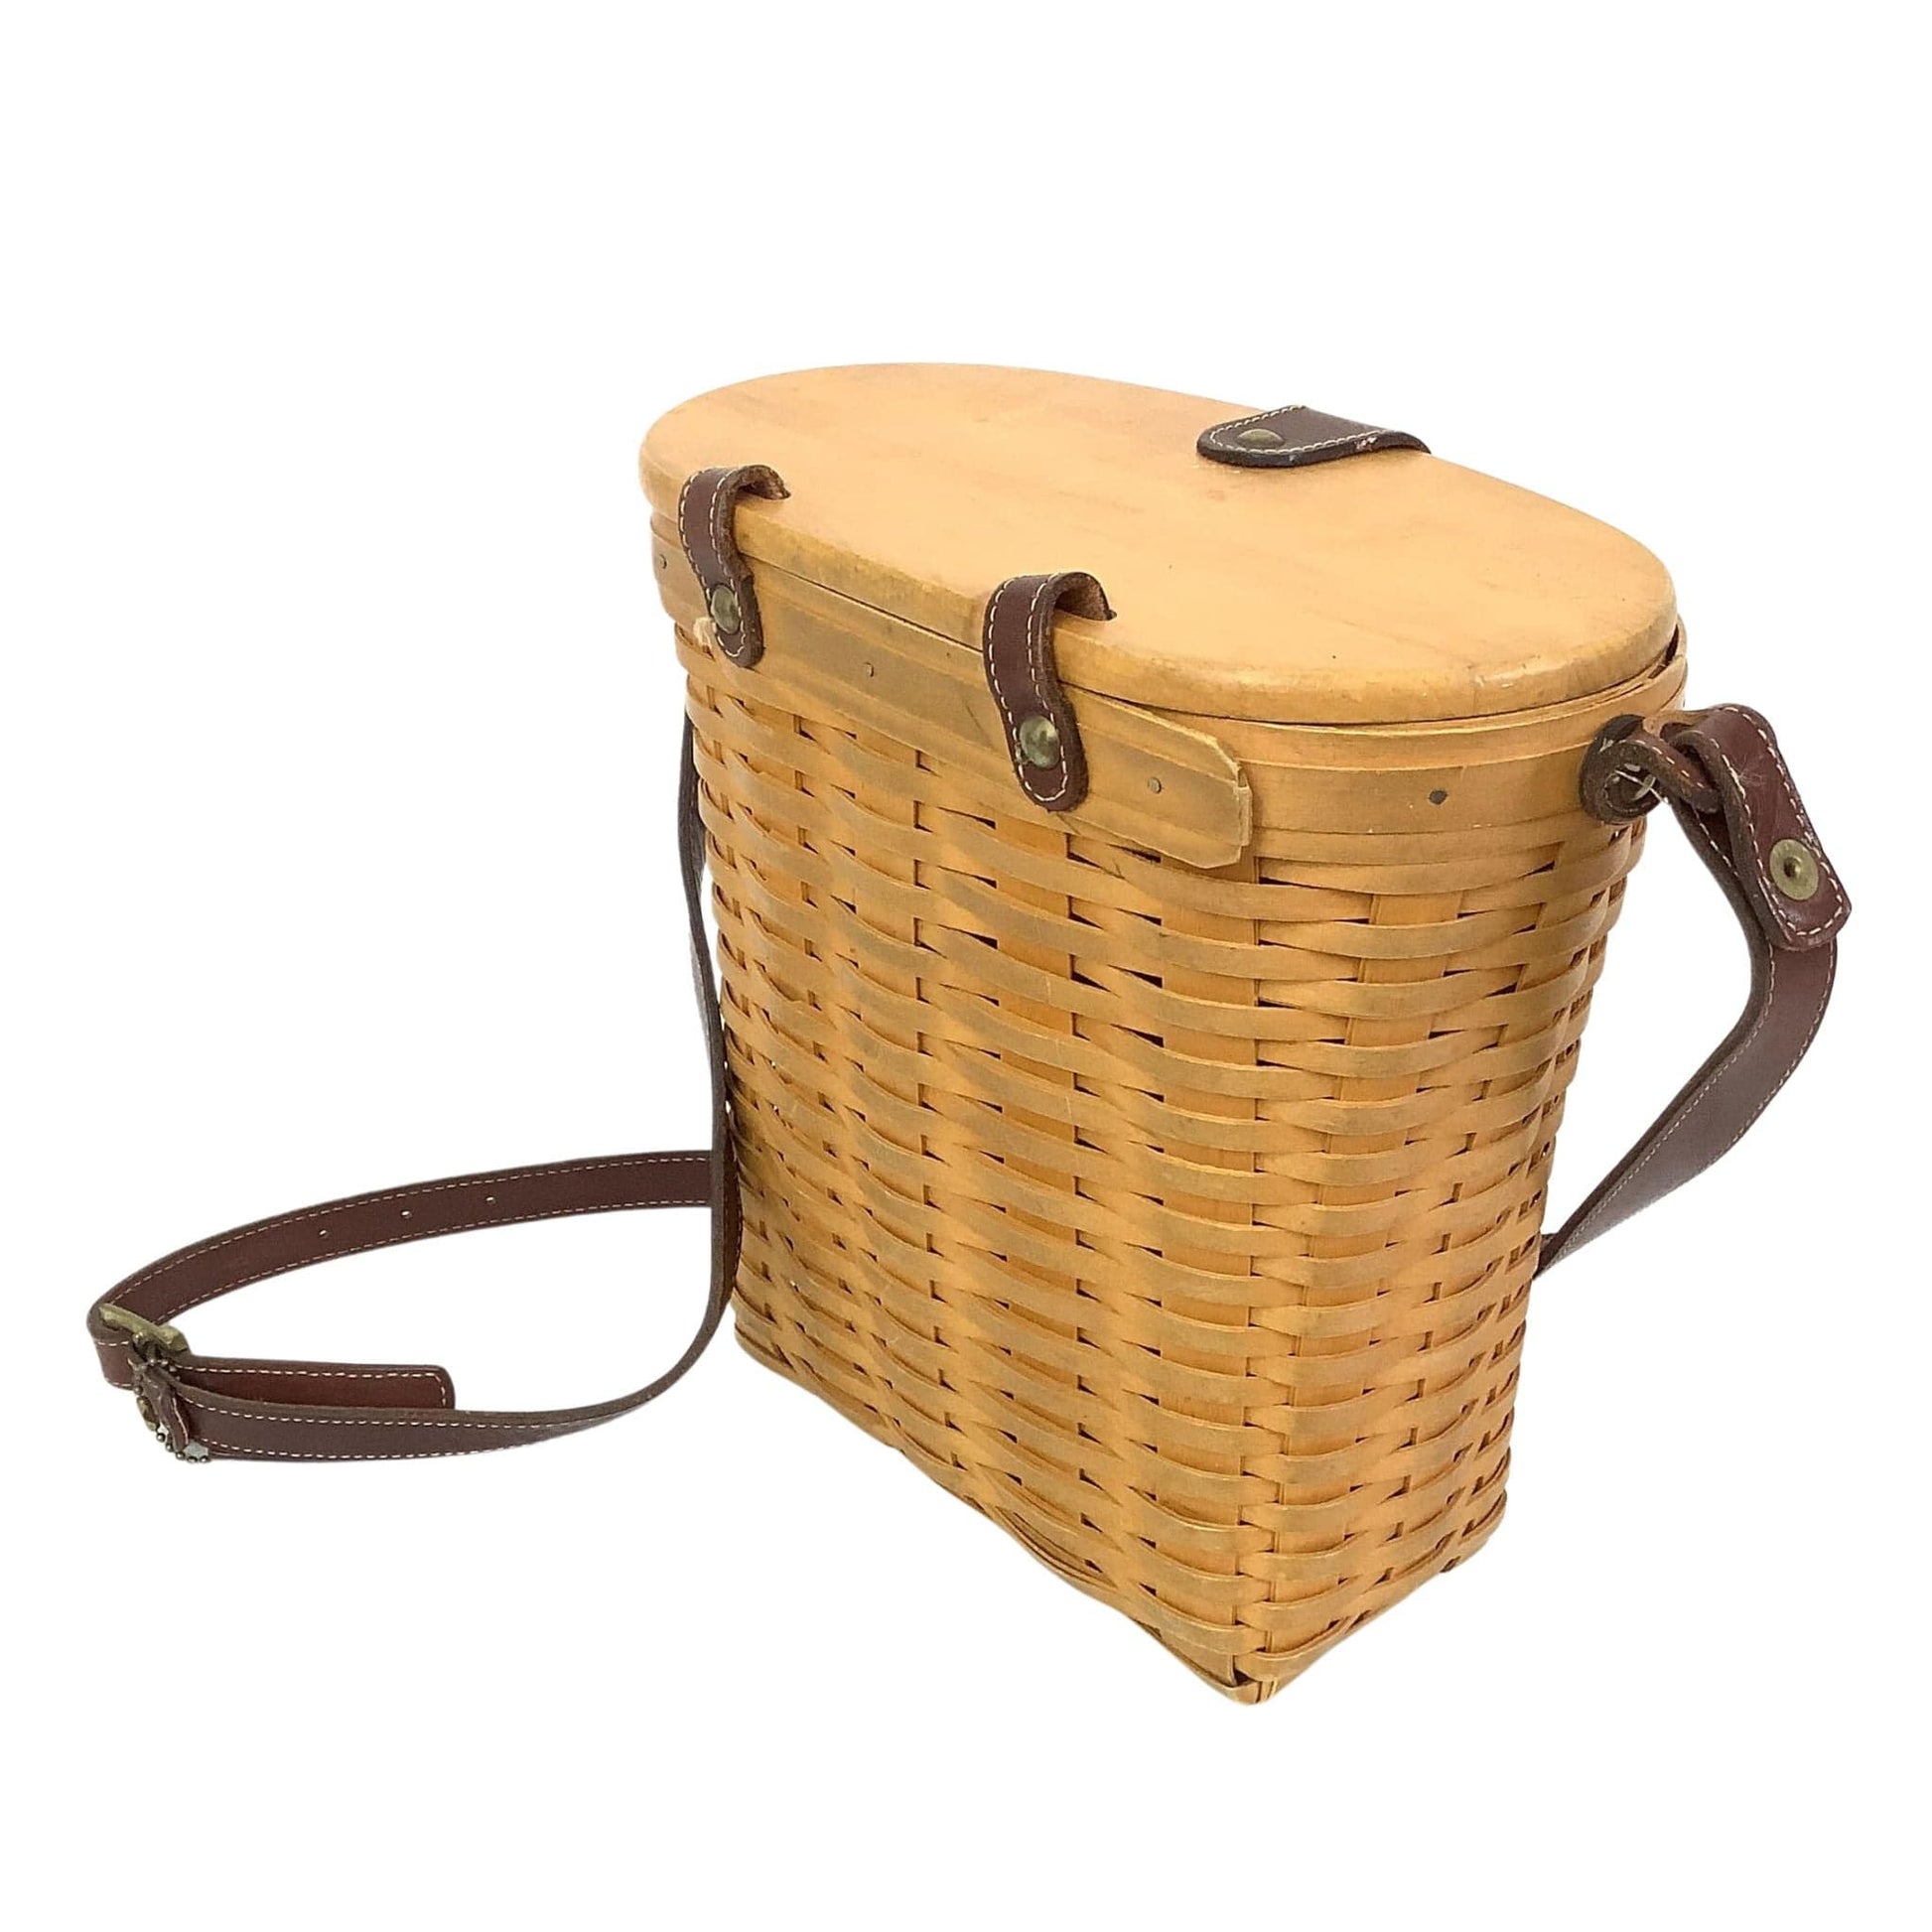 Longaberger Basket Bag Natural / Wood / Vintage 1990s